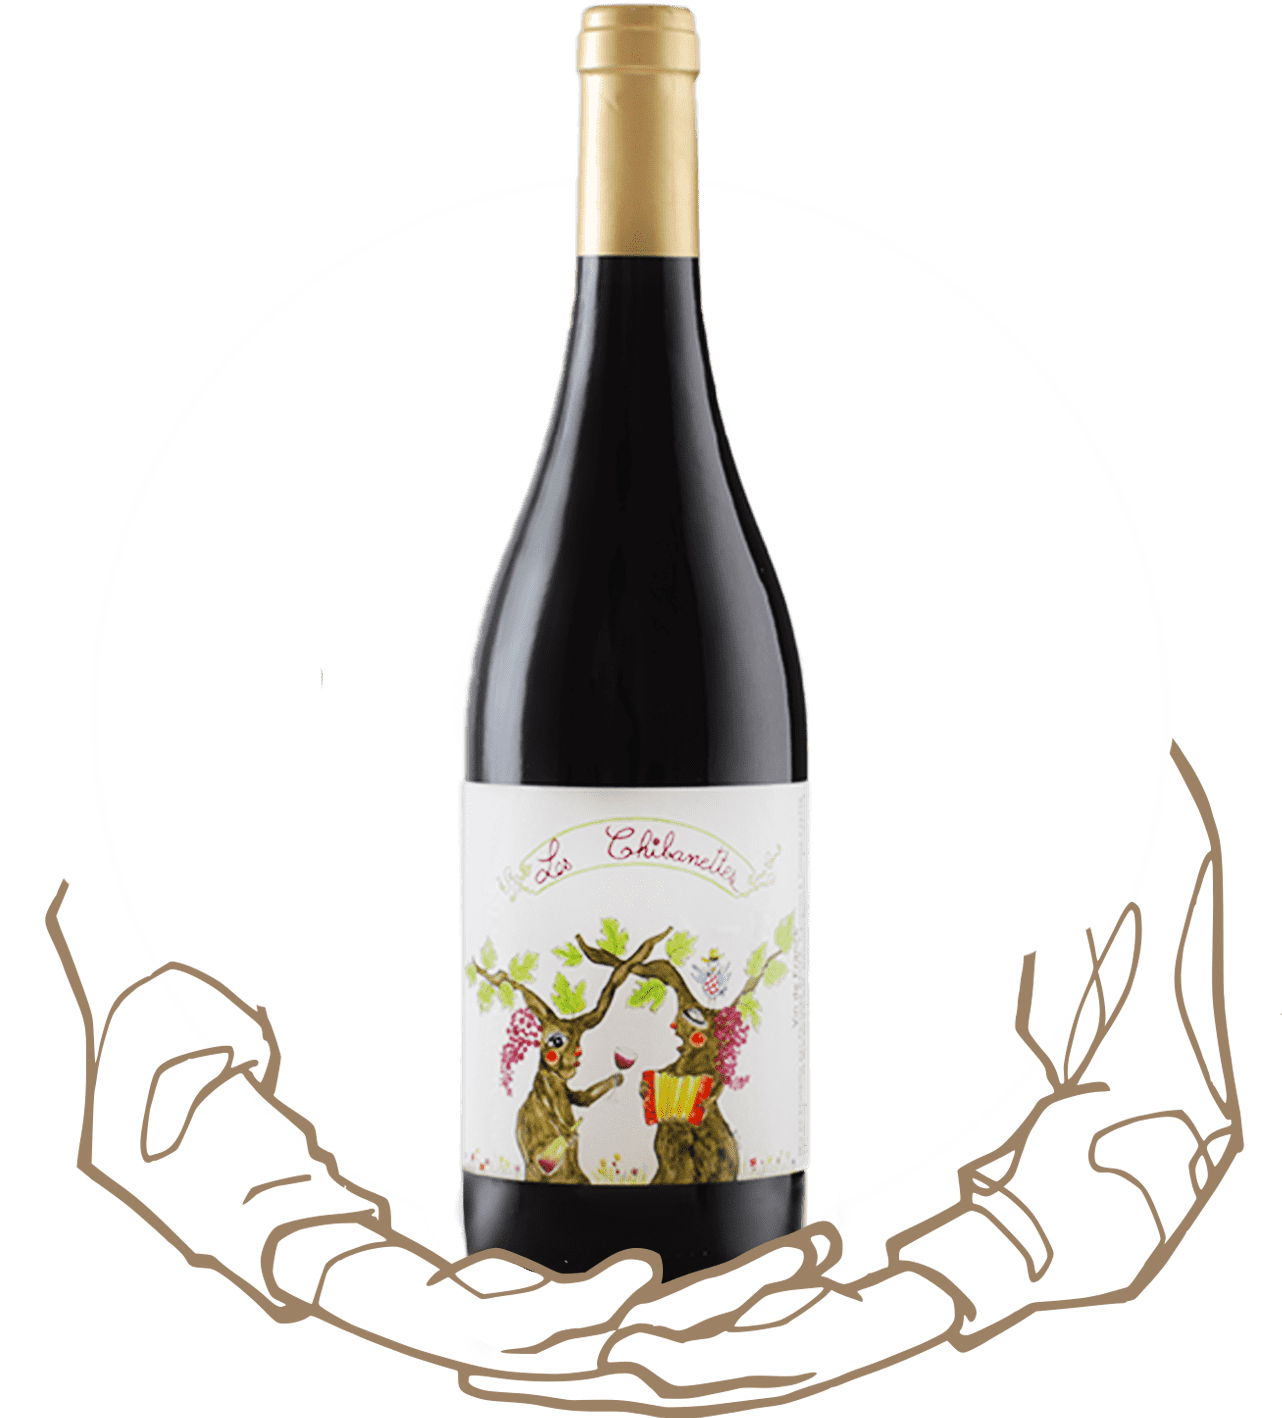 Les Chibanettes de Badea est un vin bio naturel